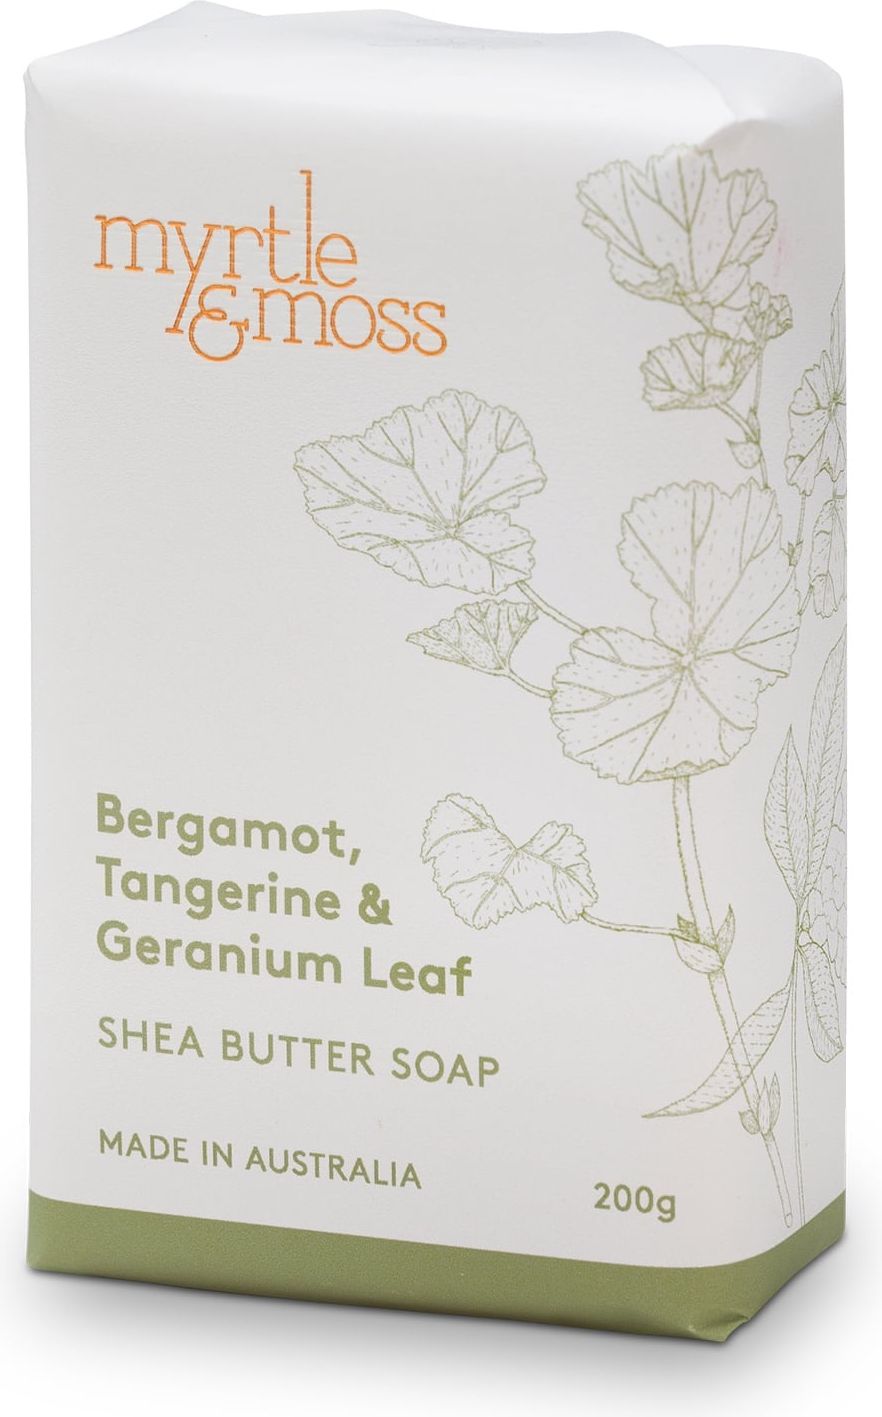 Myrtle & Moss Shea Butter Soap